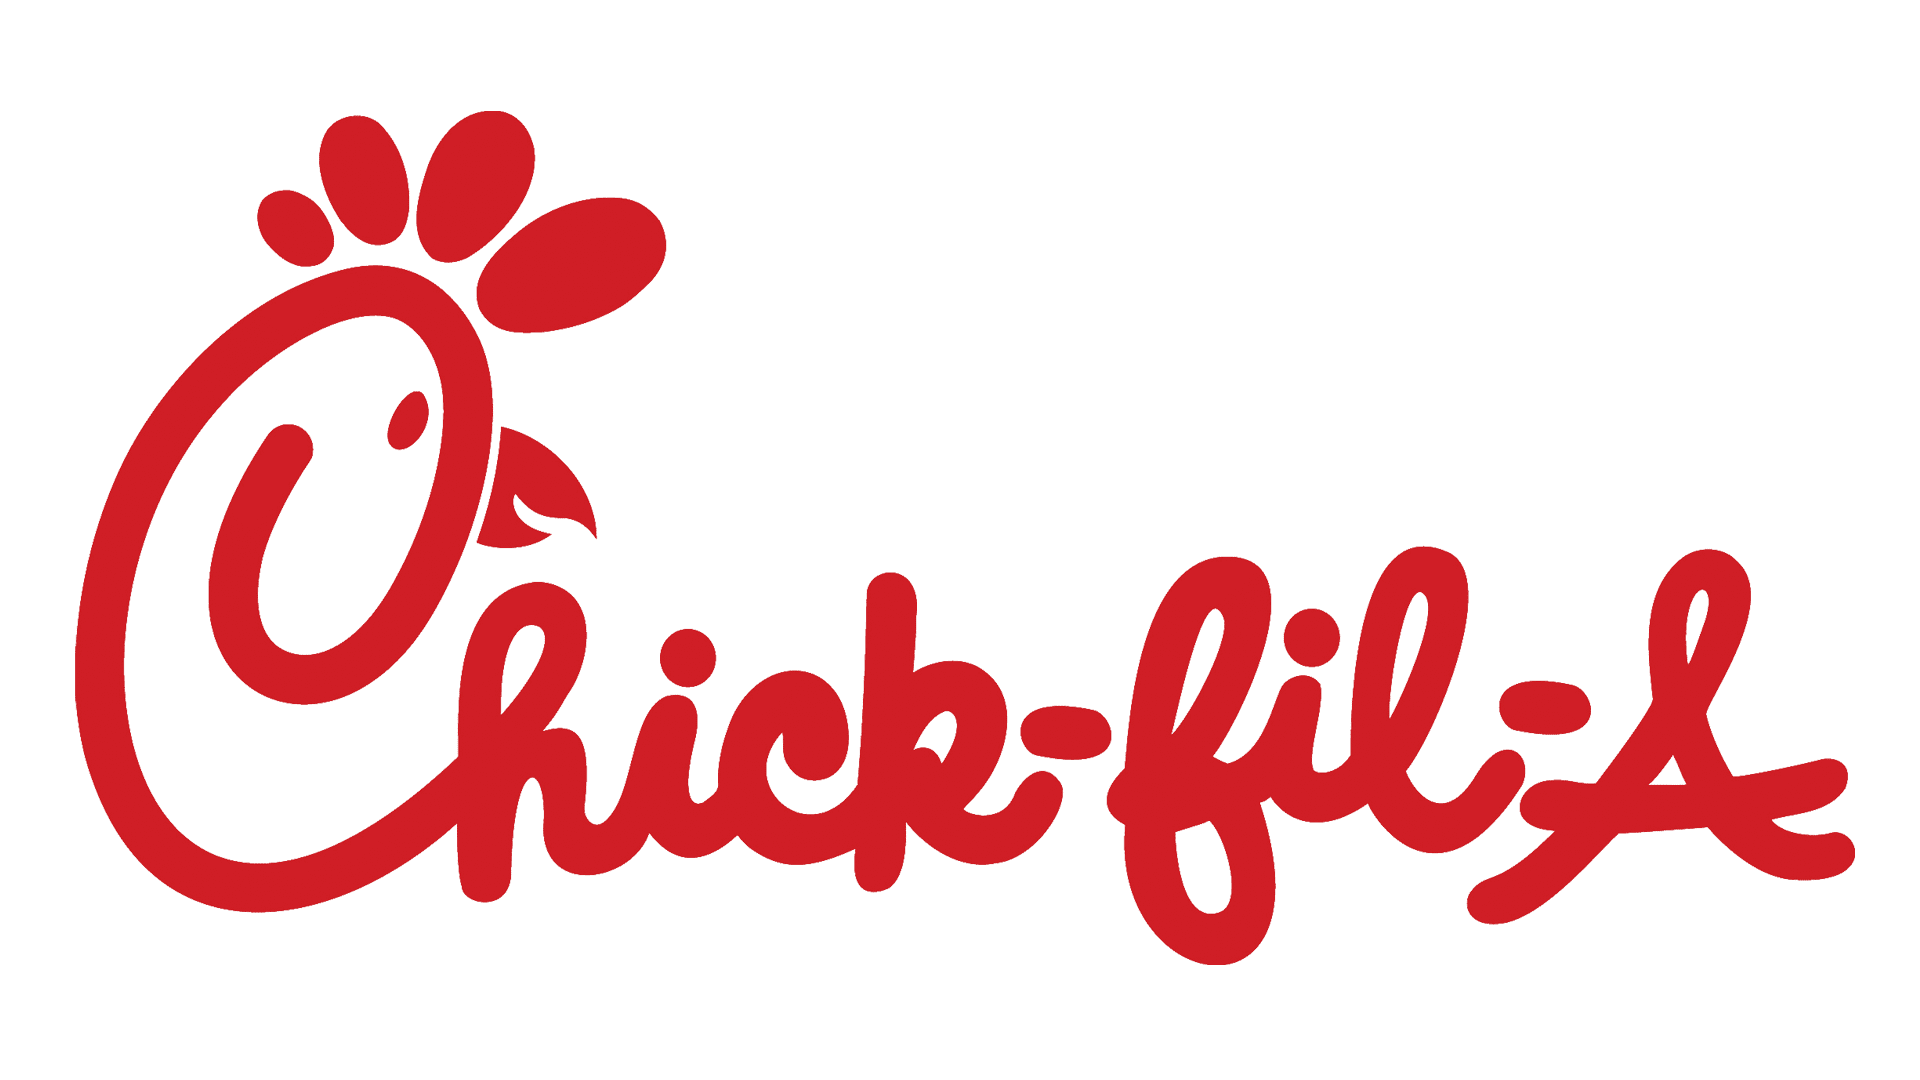 chick-fil-a-logo